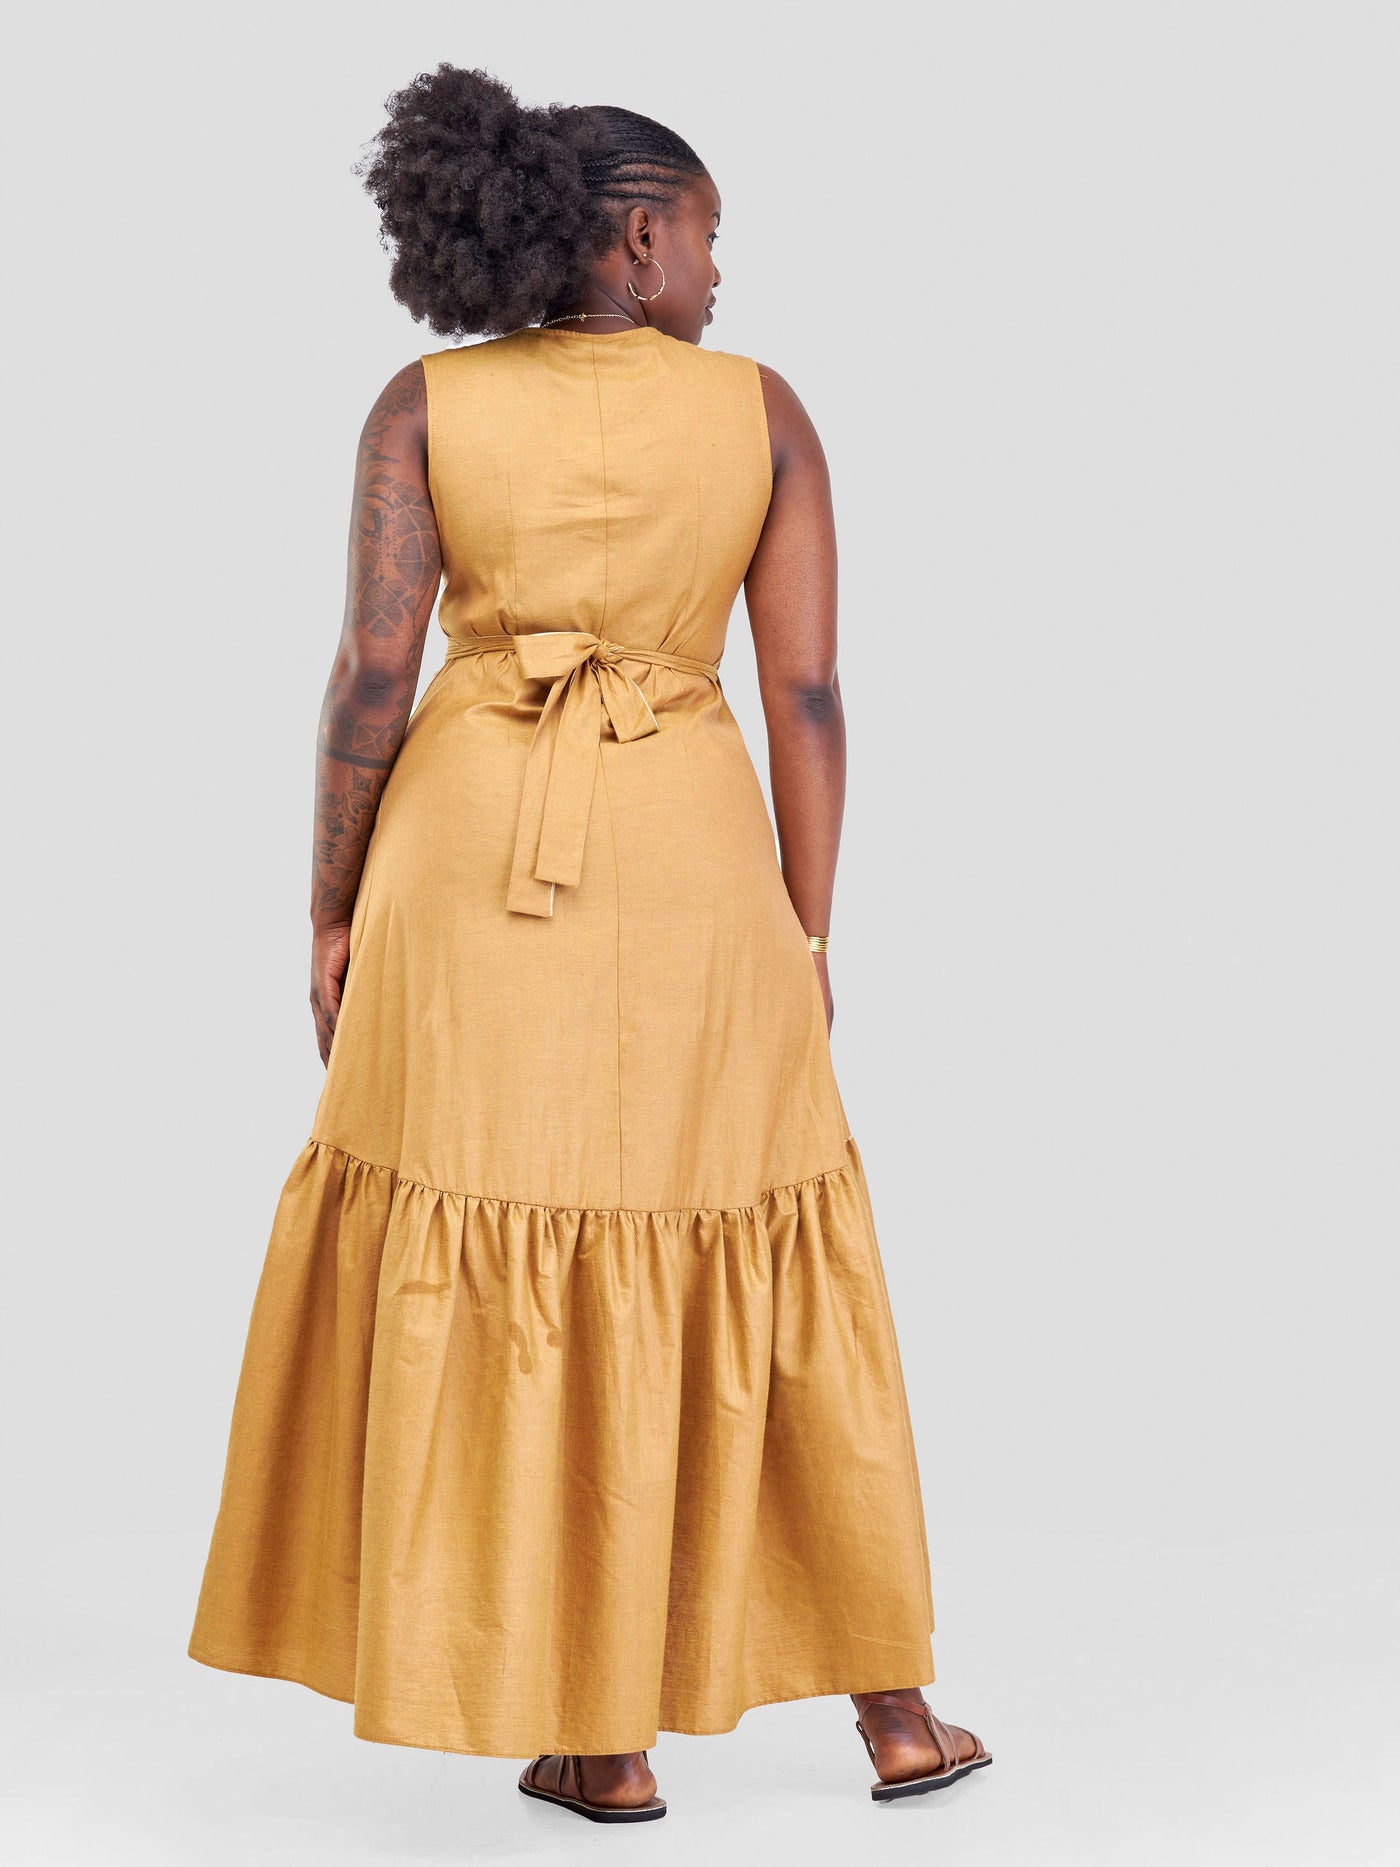 Safari Kikoy Wrap Dress - Gold